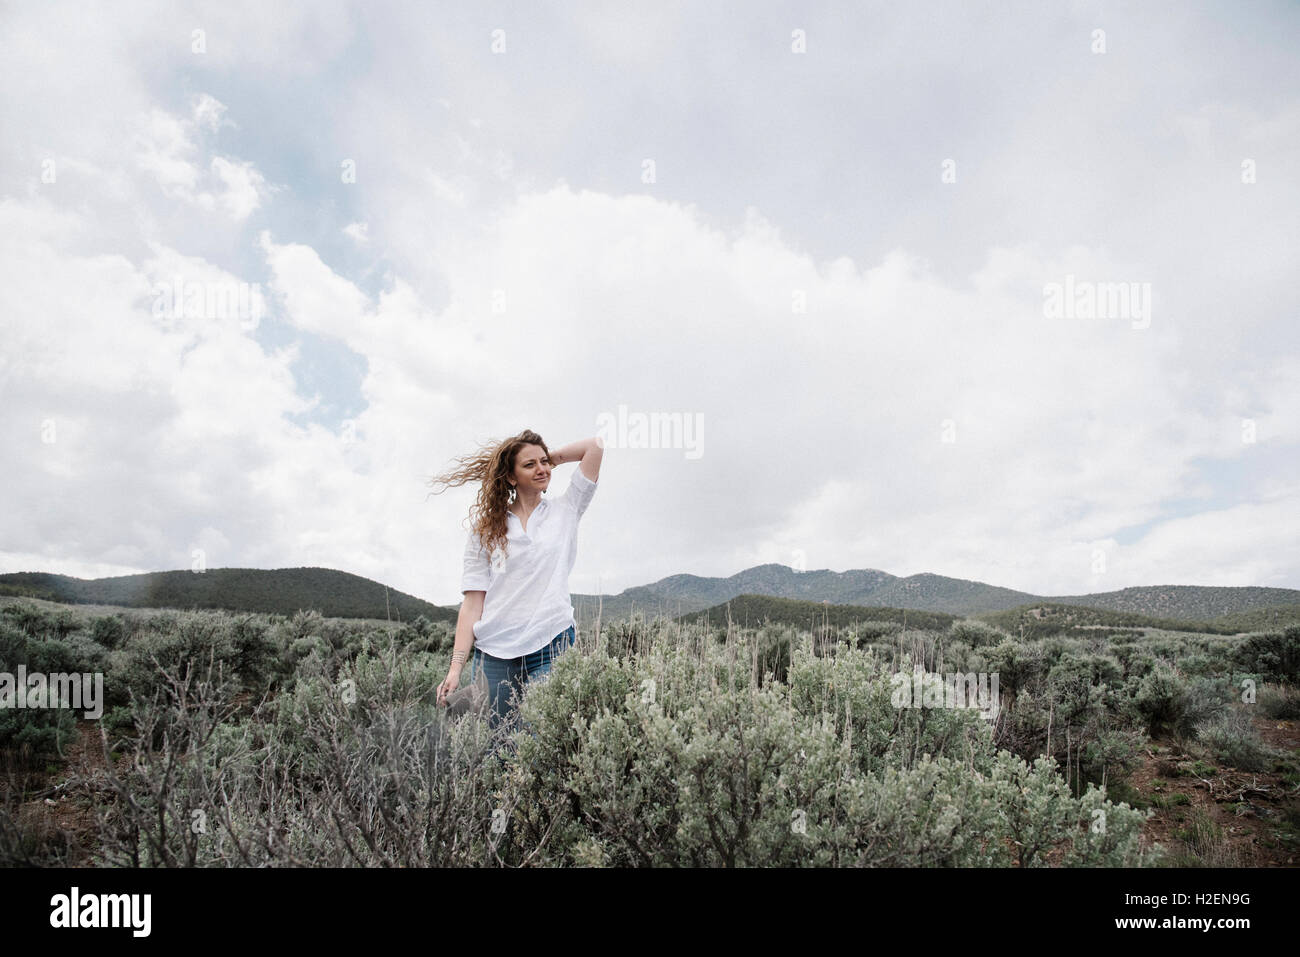 Una donna in piedi in un paesaggio aperto con una vista delle montagne e boschi di macchia. Foto Stock